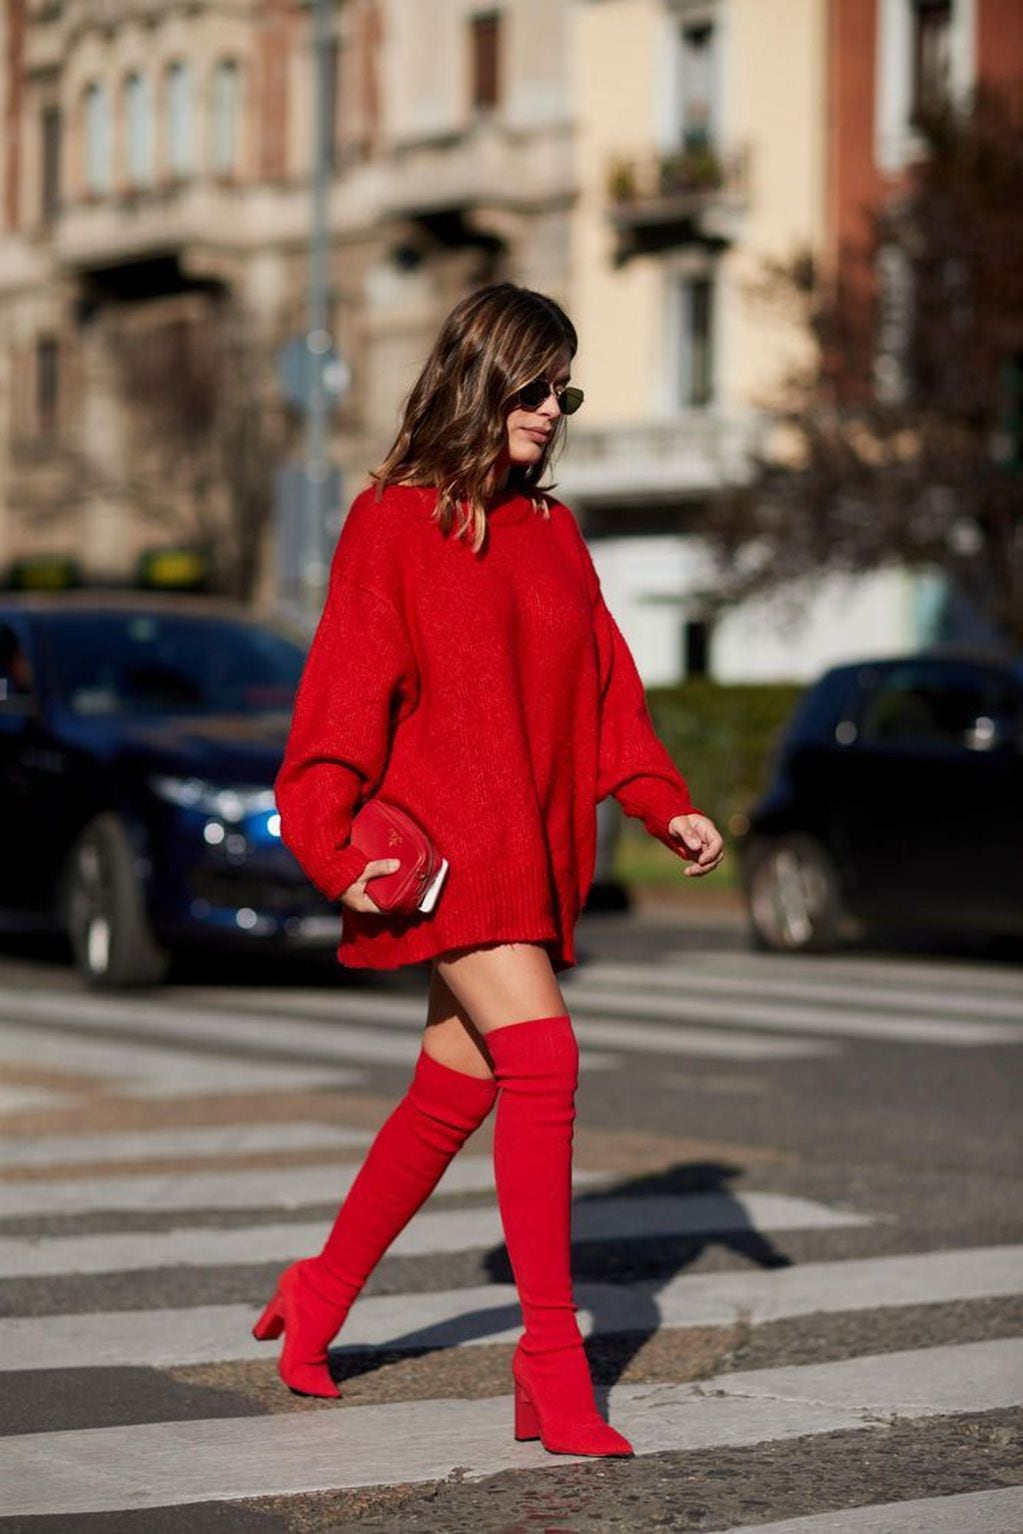 Las prendas rojas transmiten energía, pasión, calor, sensualidad y dinamismo.